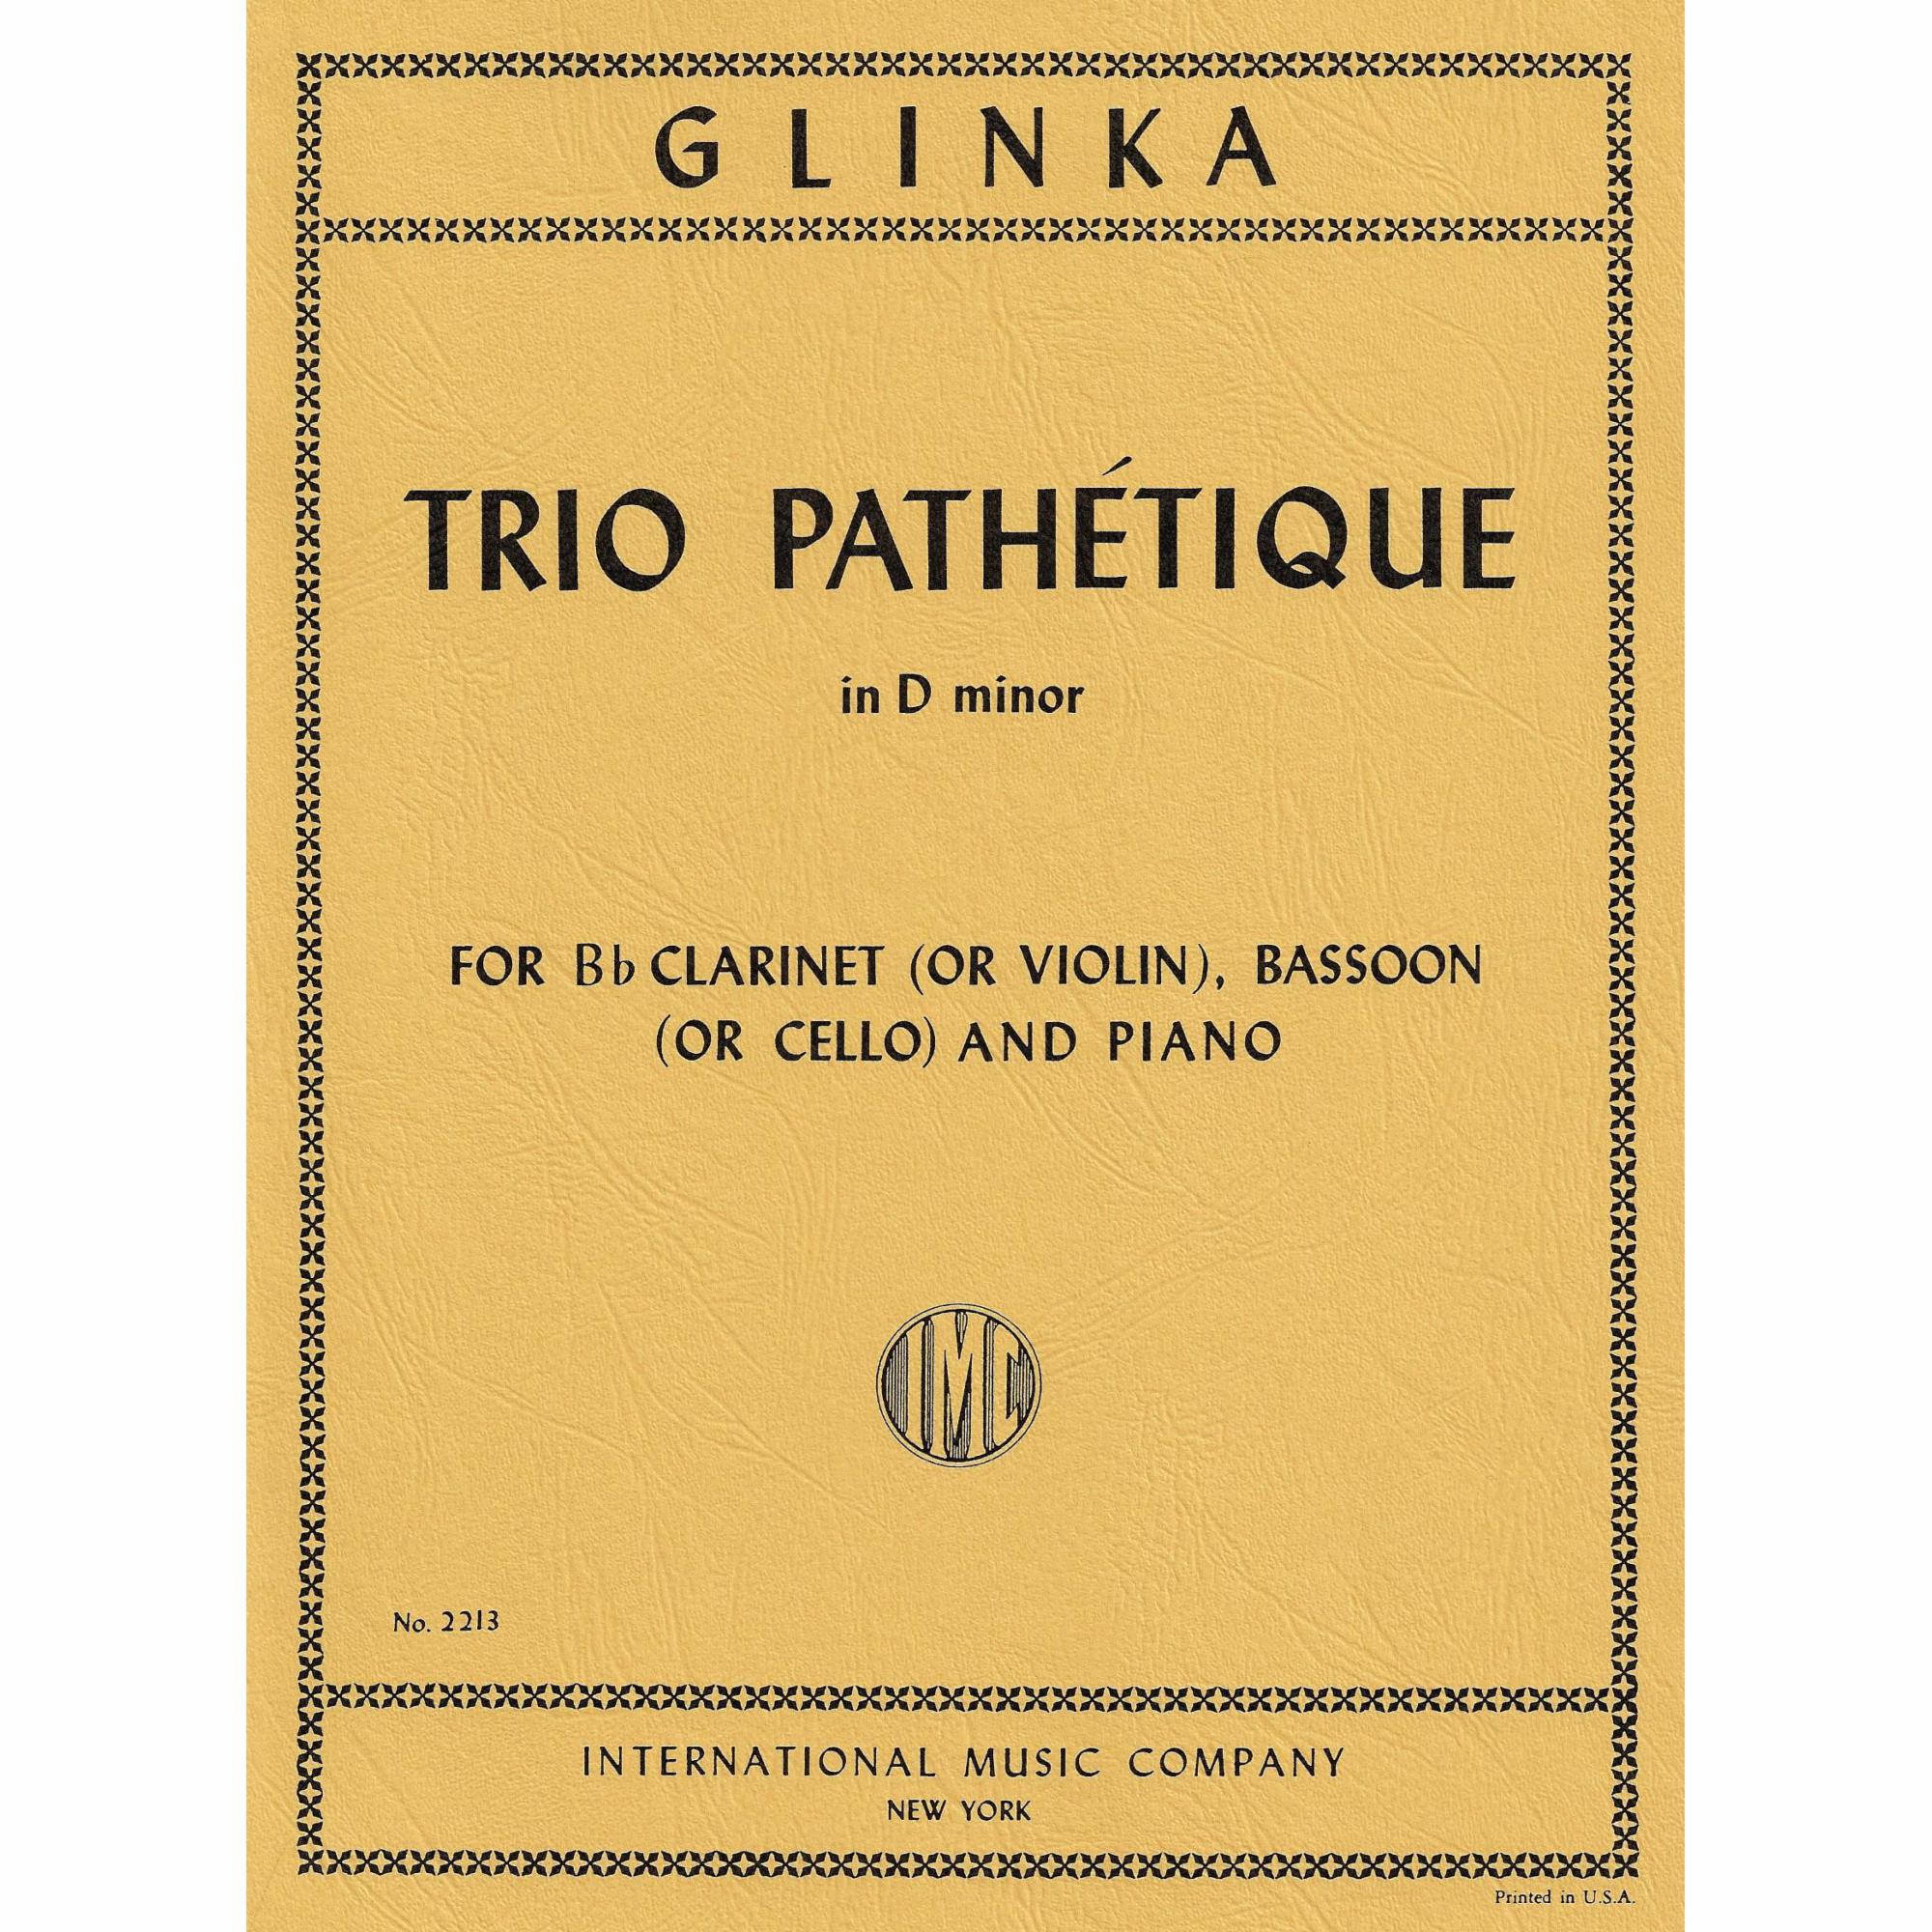 Glinka -- Trio Pathetique in D Minor